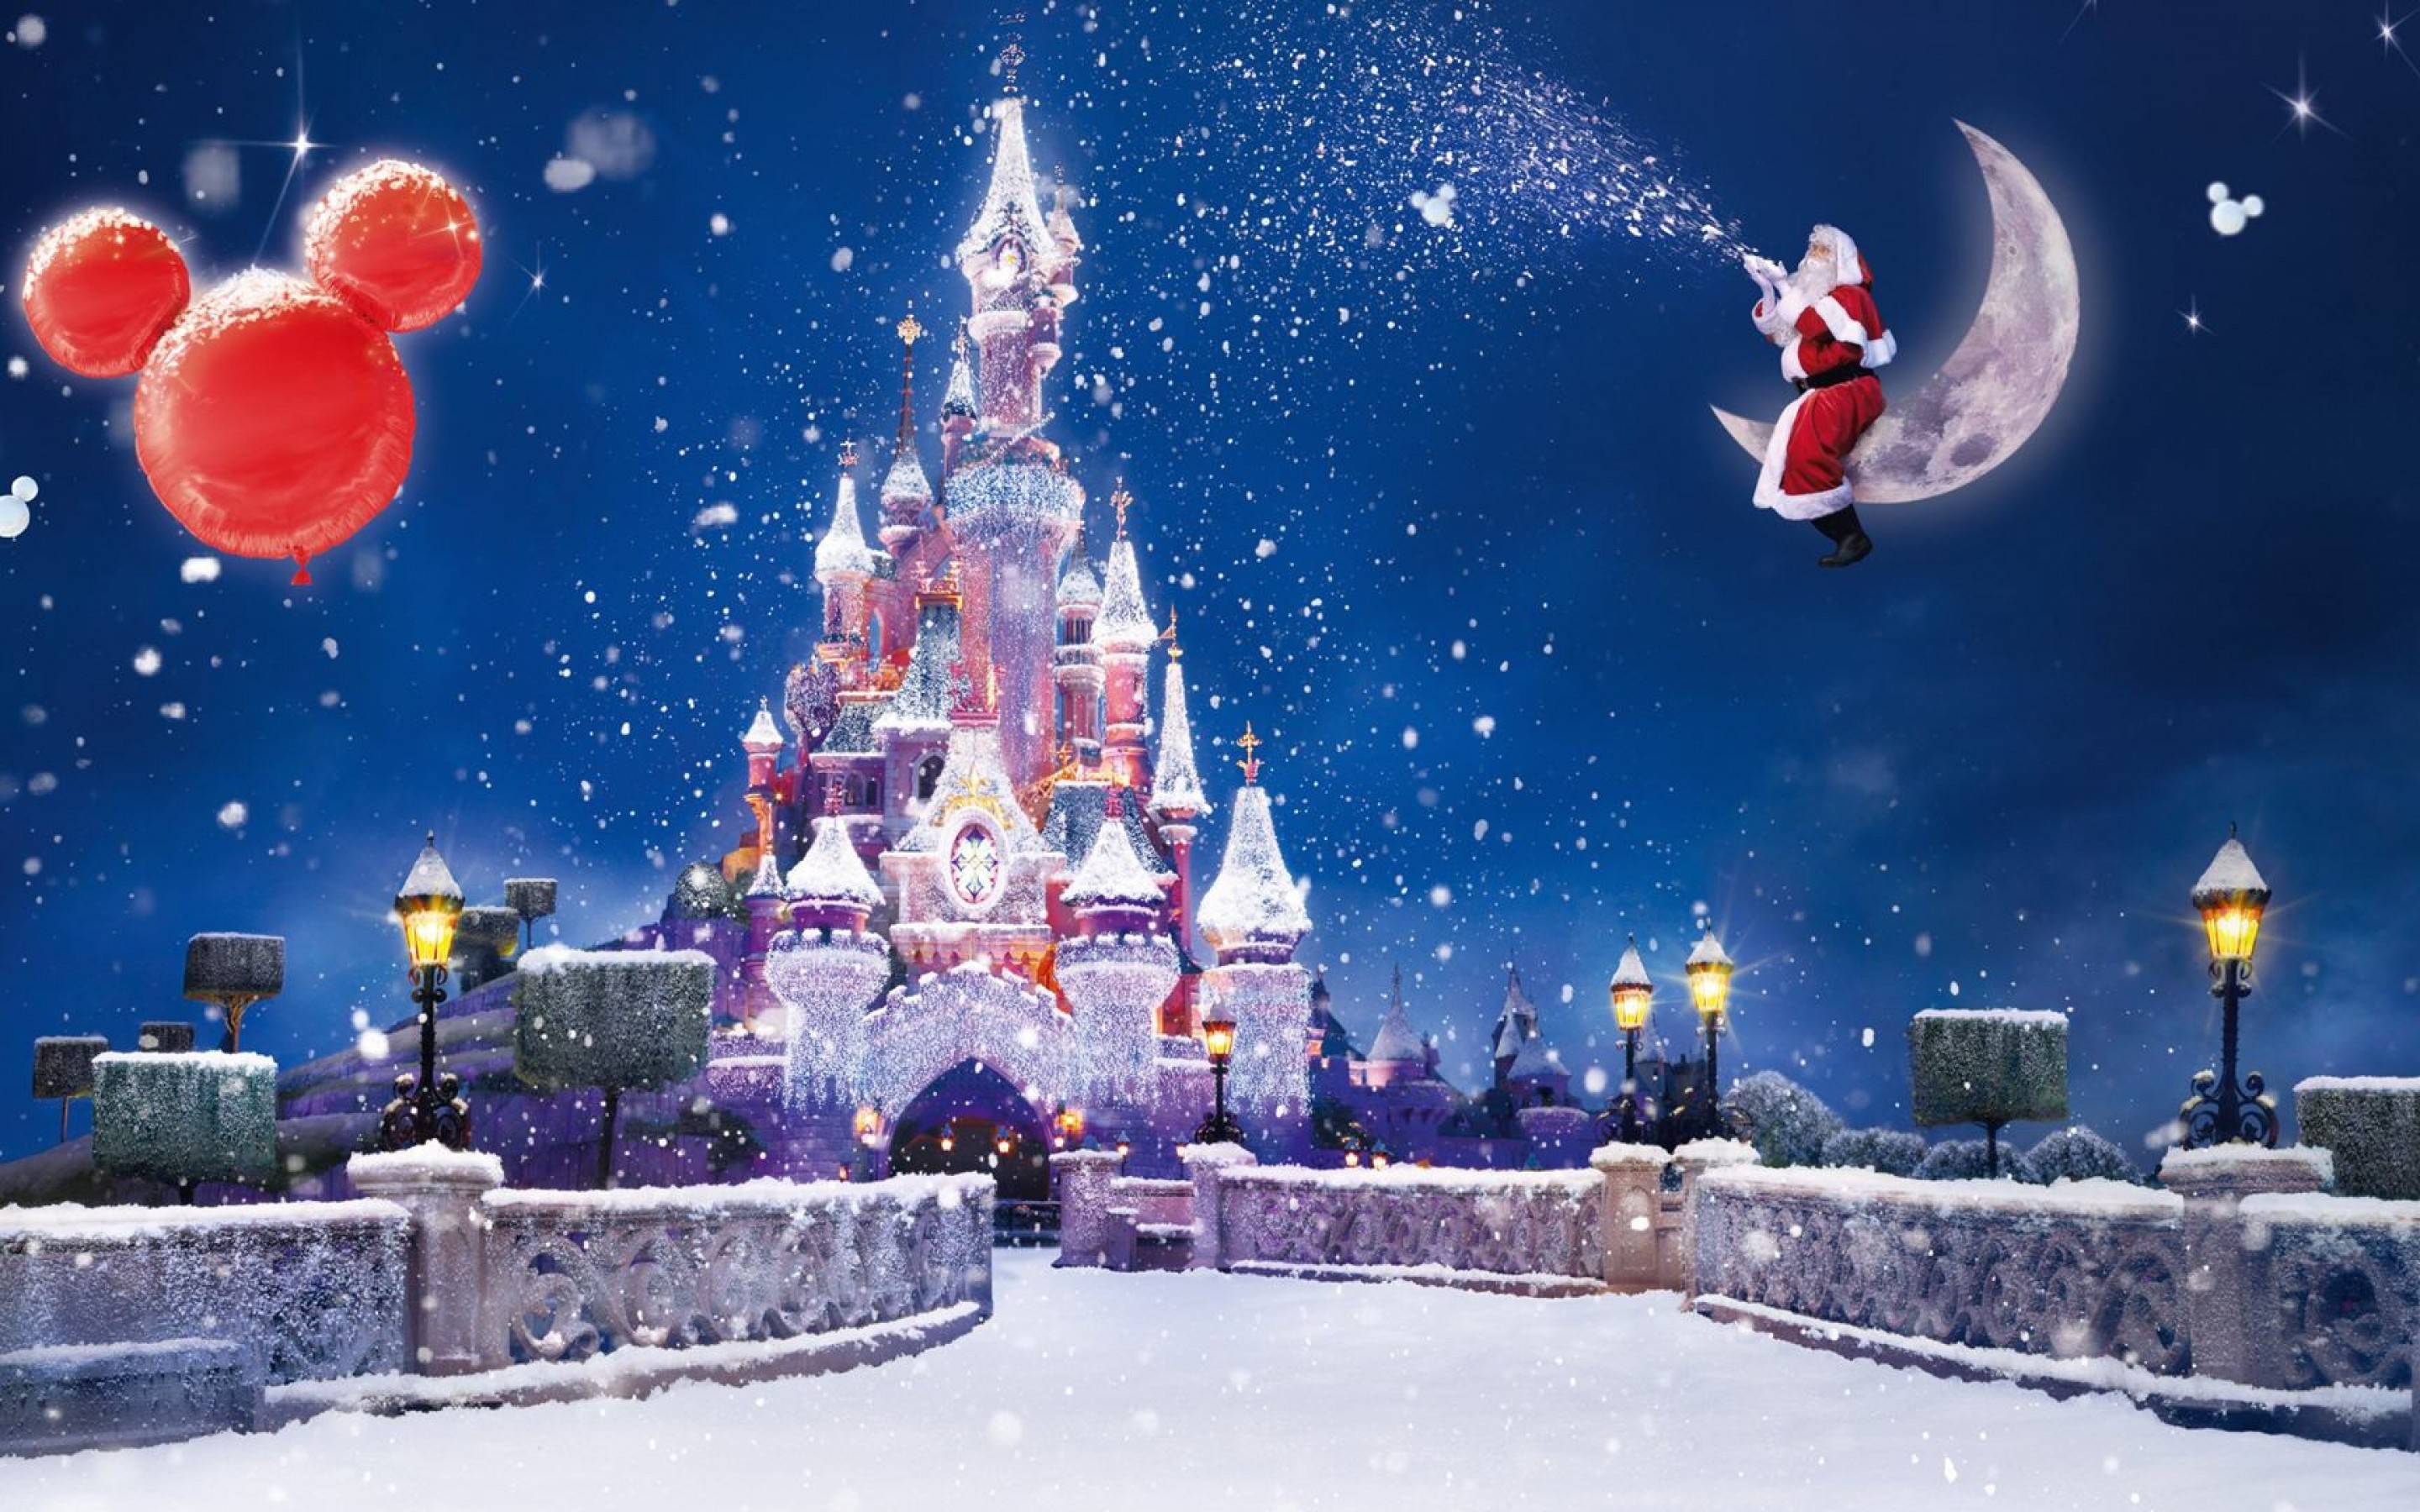 Disney Giáng sinh - Những nhân vật Disney nổi tiếng sẽ mang đến cho bạn cảm giác thật sự đặc biệt trong mùa giáng sinh này. Hãy đắm chìm vào những hình ảnh đầy sắc màu và tràn đầy năng lượng để tận hưởng một mùa lễ hội trọn vẹn.